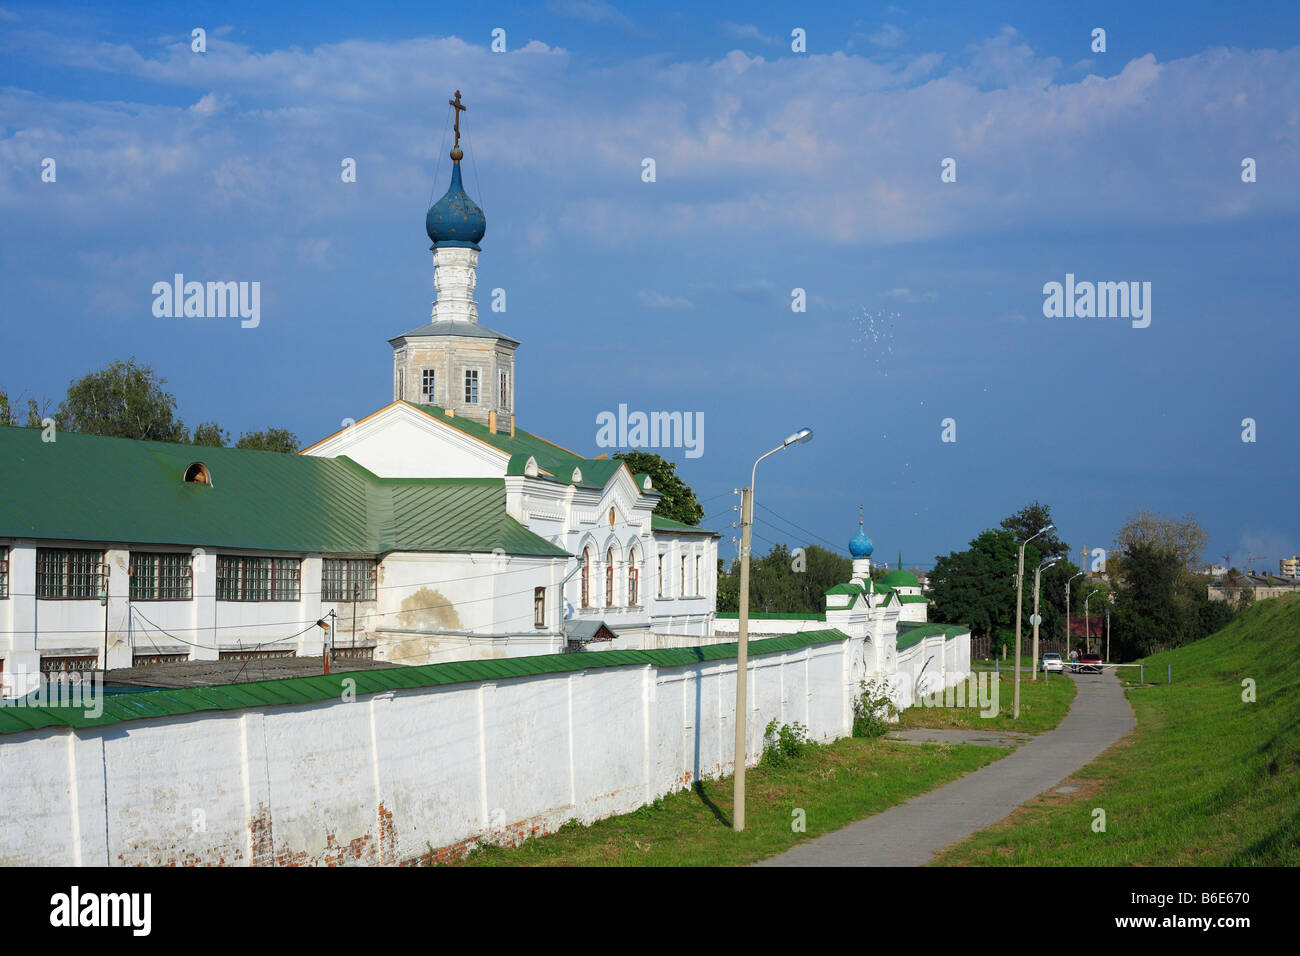 Russian church, blue sky, landscape, Ryazan, Kremlin, Russia Stock Photo